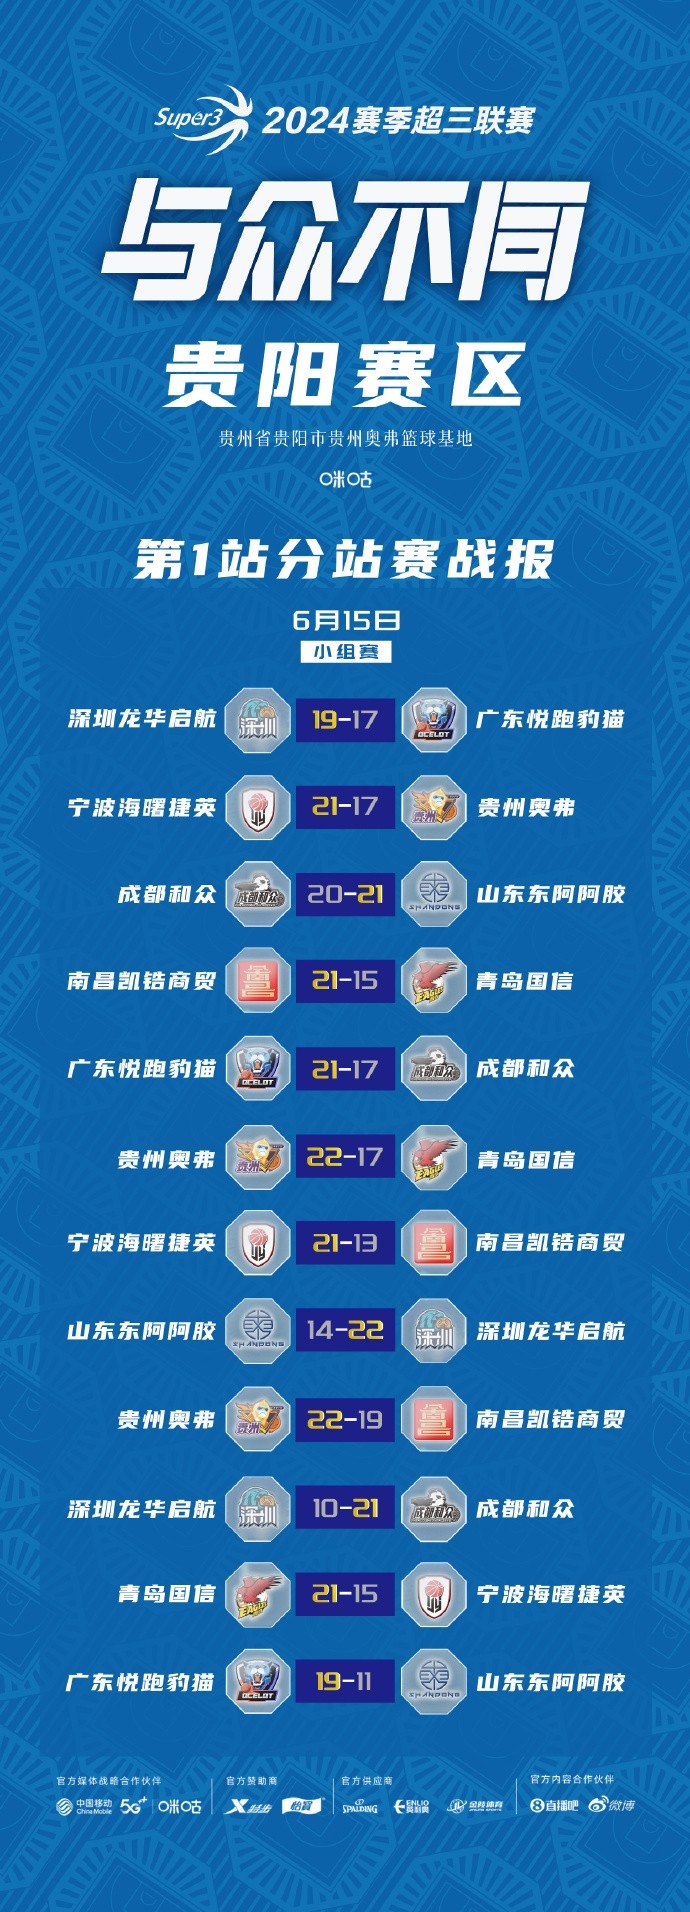 超三联赛贵阳、武汉赛区今日结束小组赛明天进入淘汰赛阶段